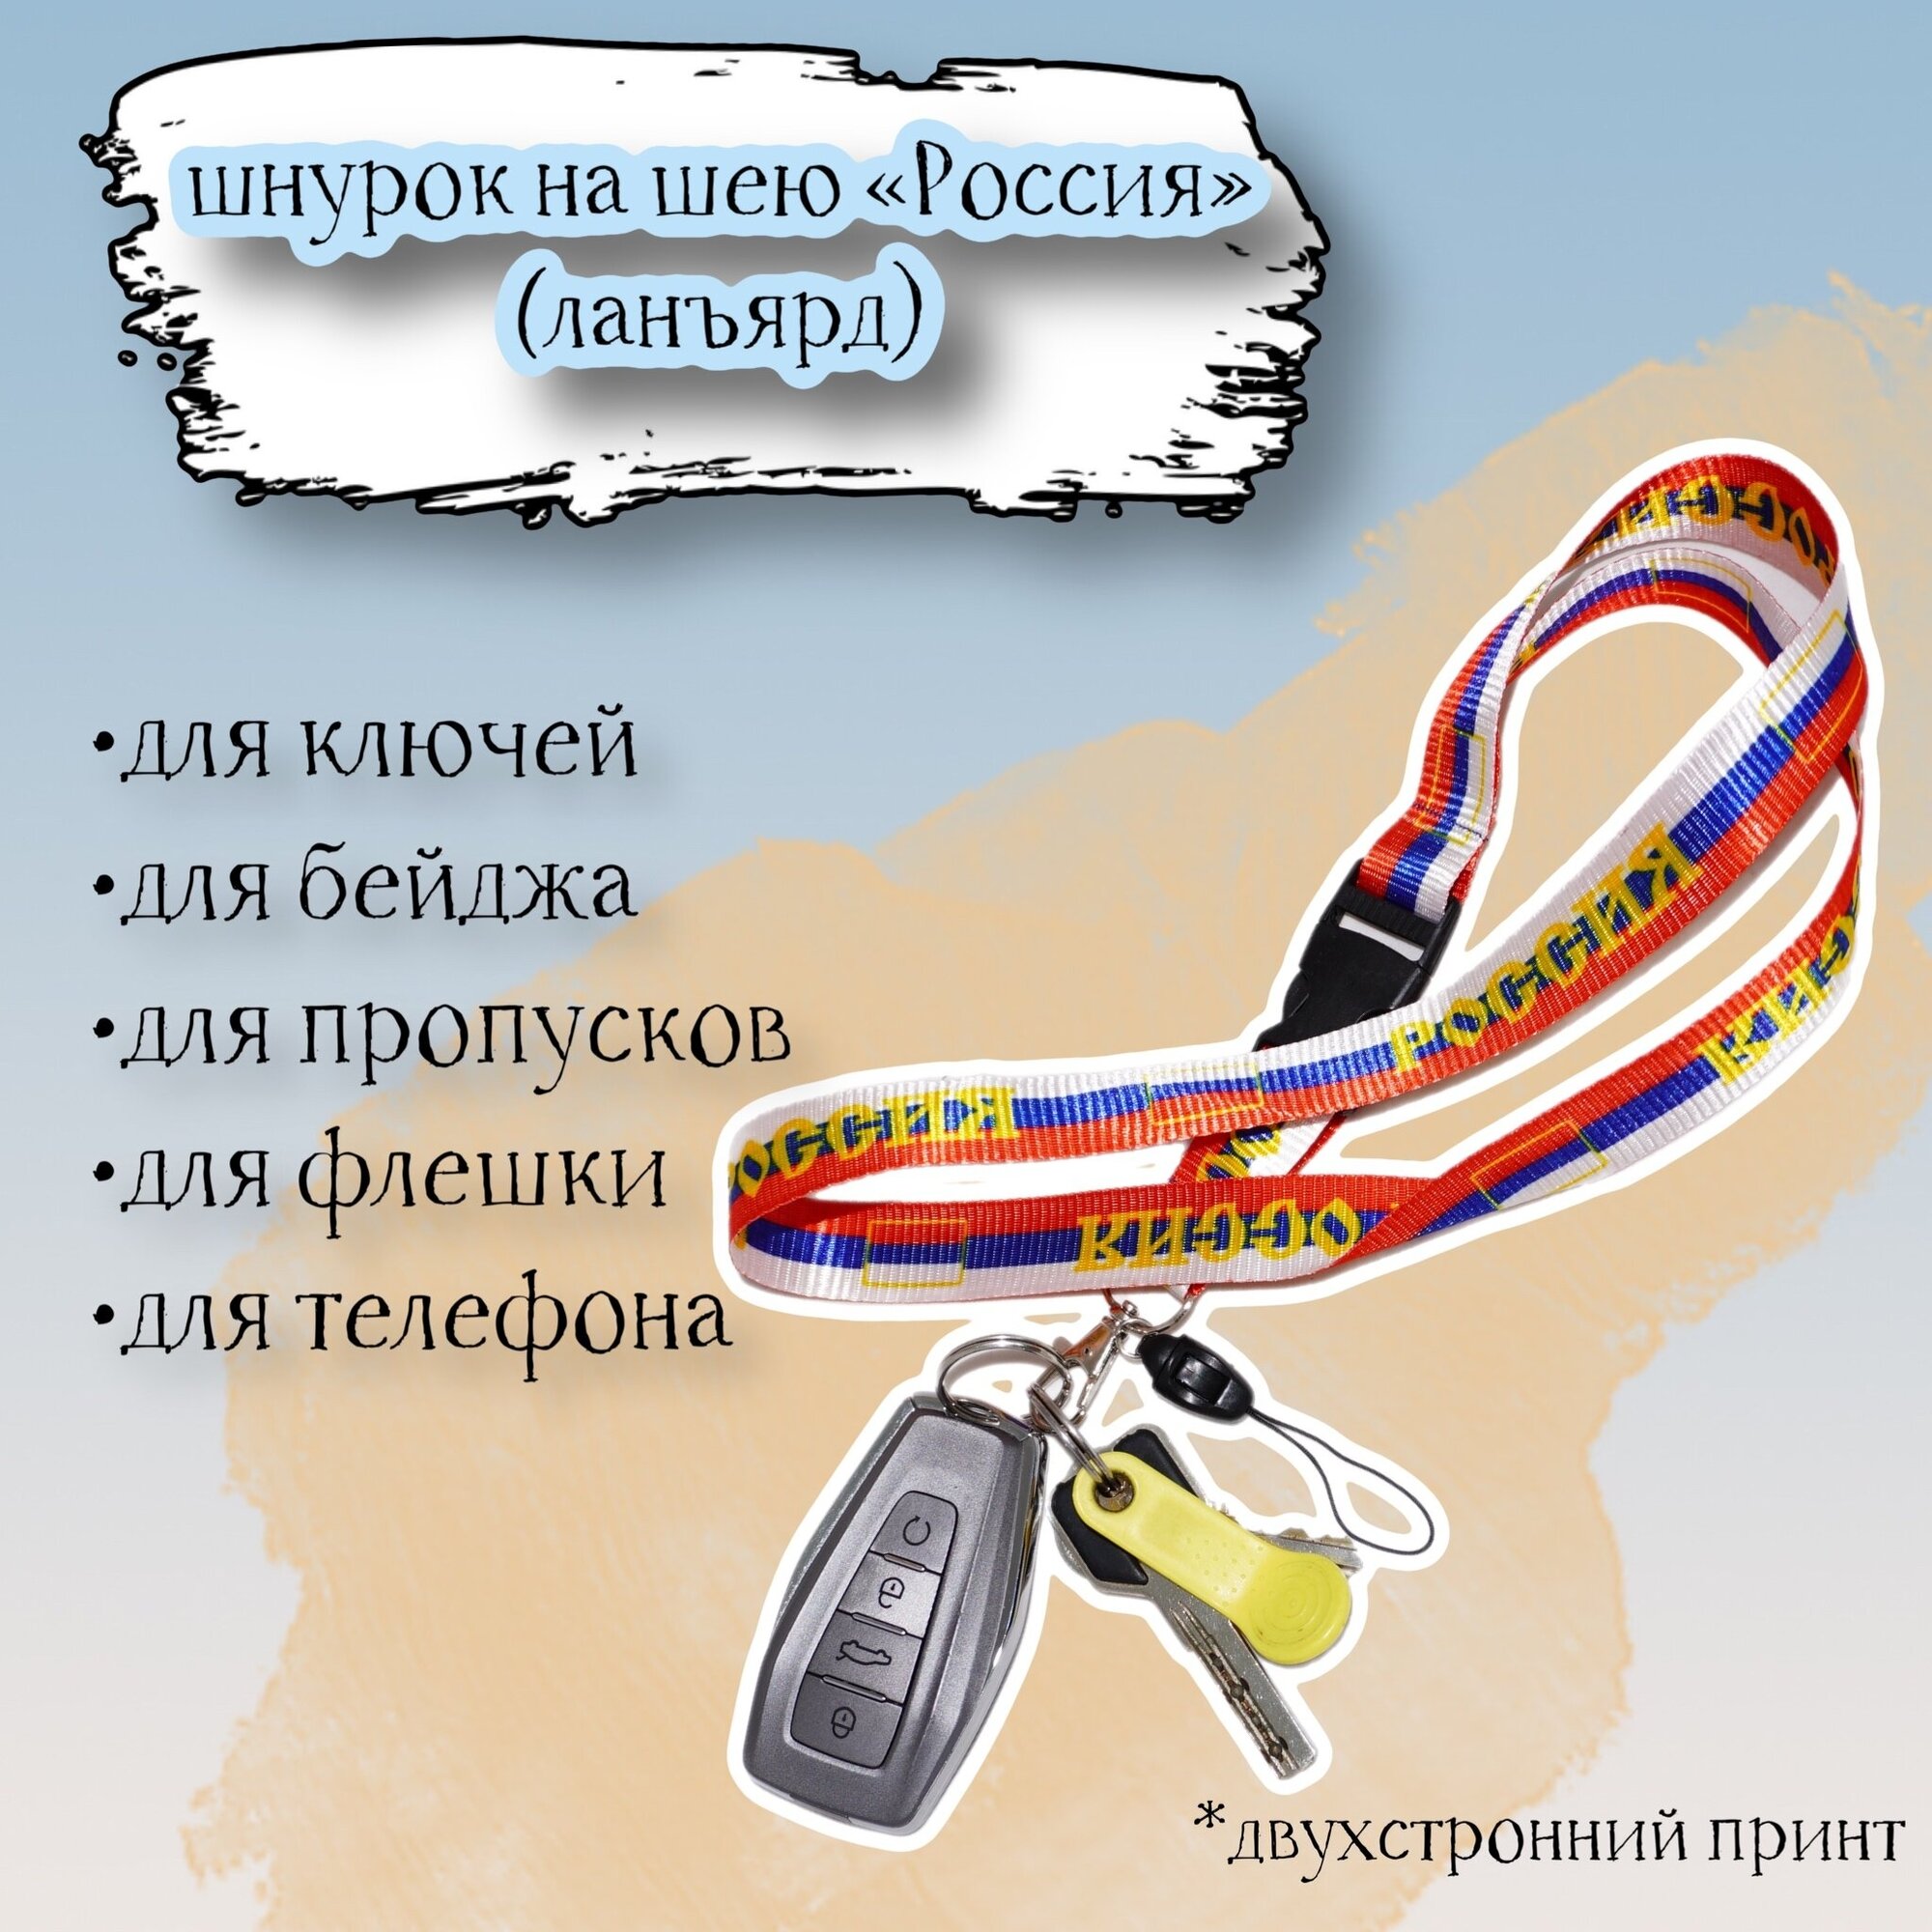 Тканевый шнурок на шею для ключей бейджа телефона "Россия" в цвет флага / Ланьярд / Шнурок с карабином и быстросъёмом триколор 60х2